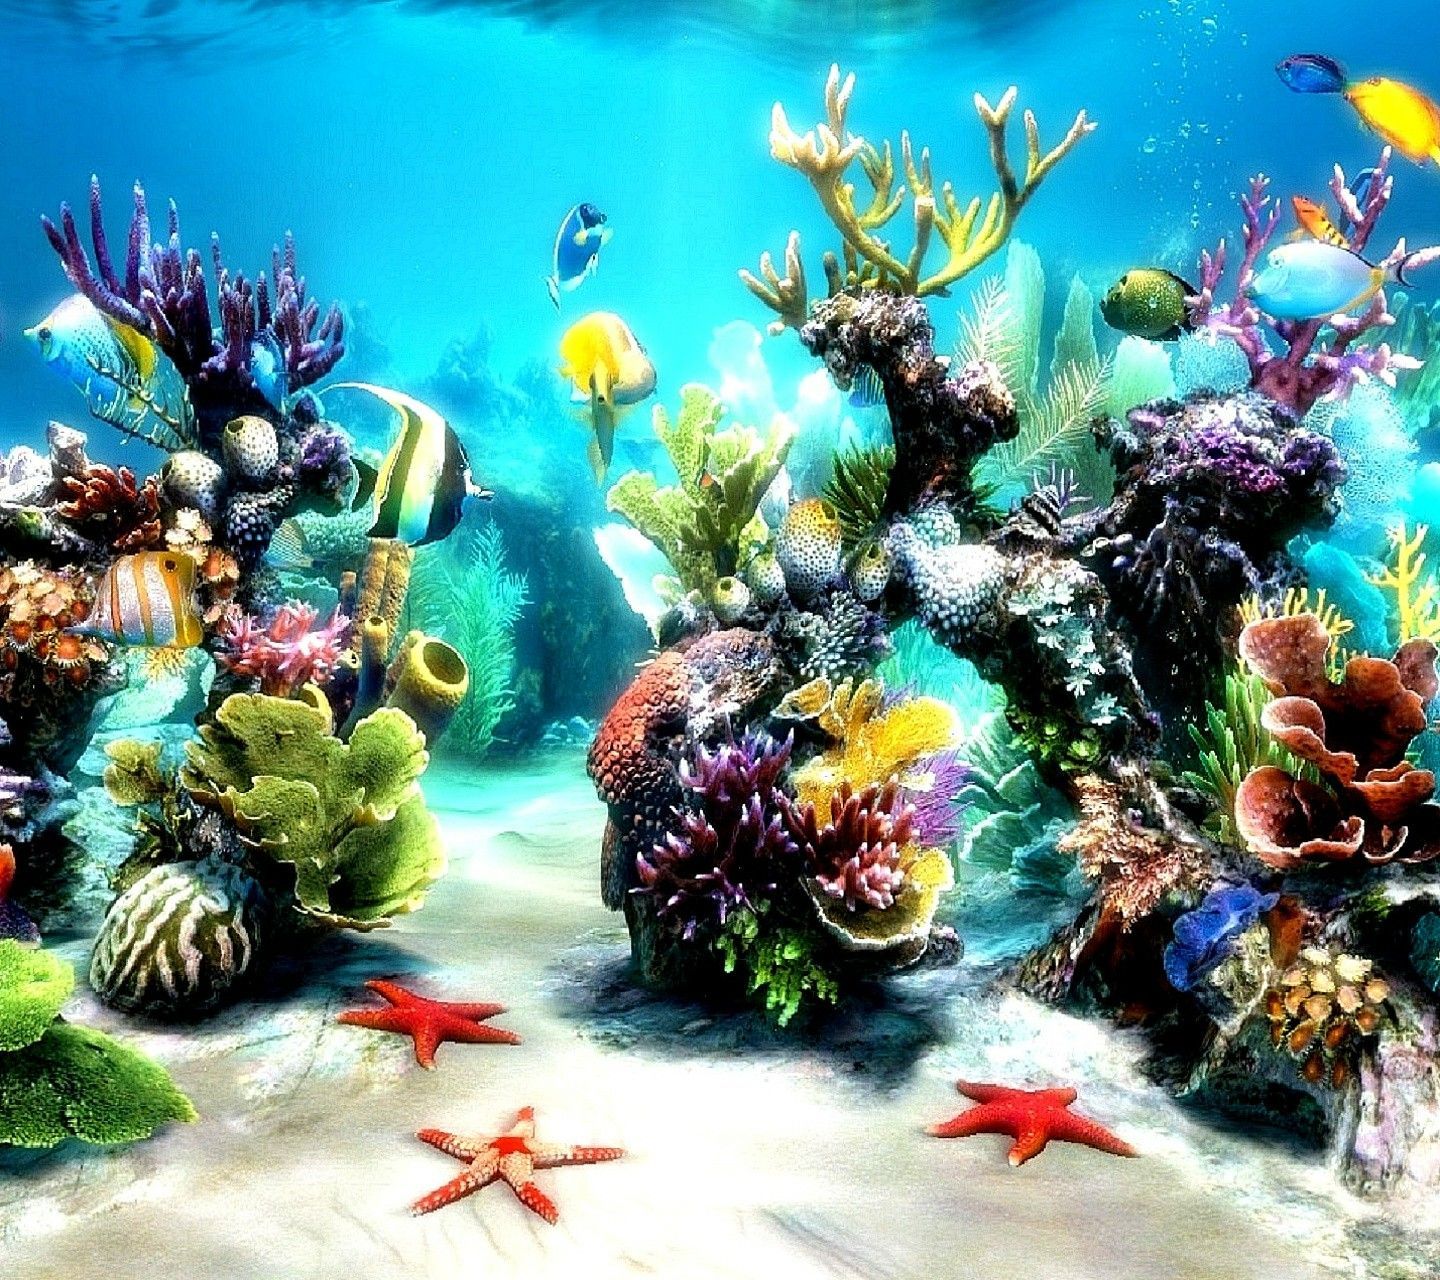 Coral en el fondo del mar | Vida marina bajo el agua | Acuario en vivo